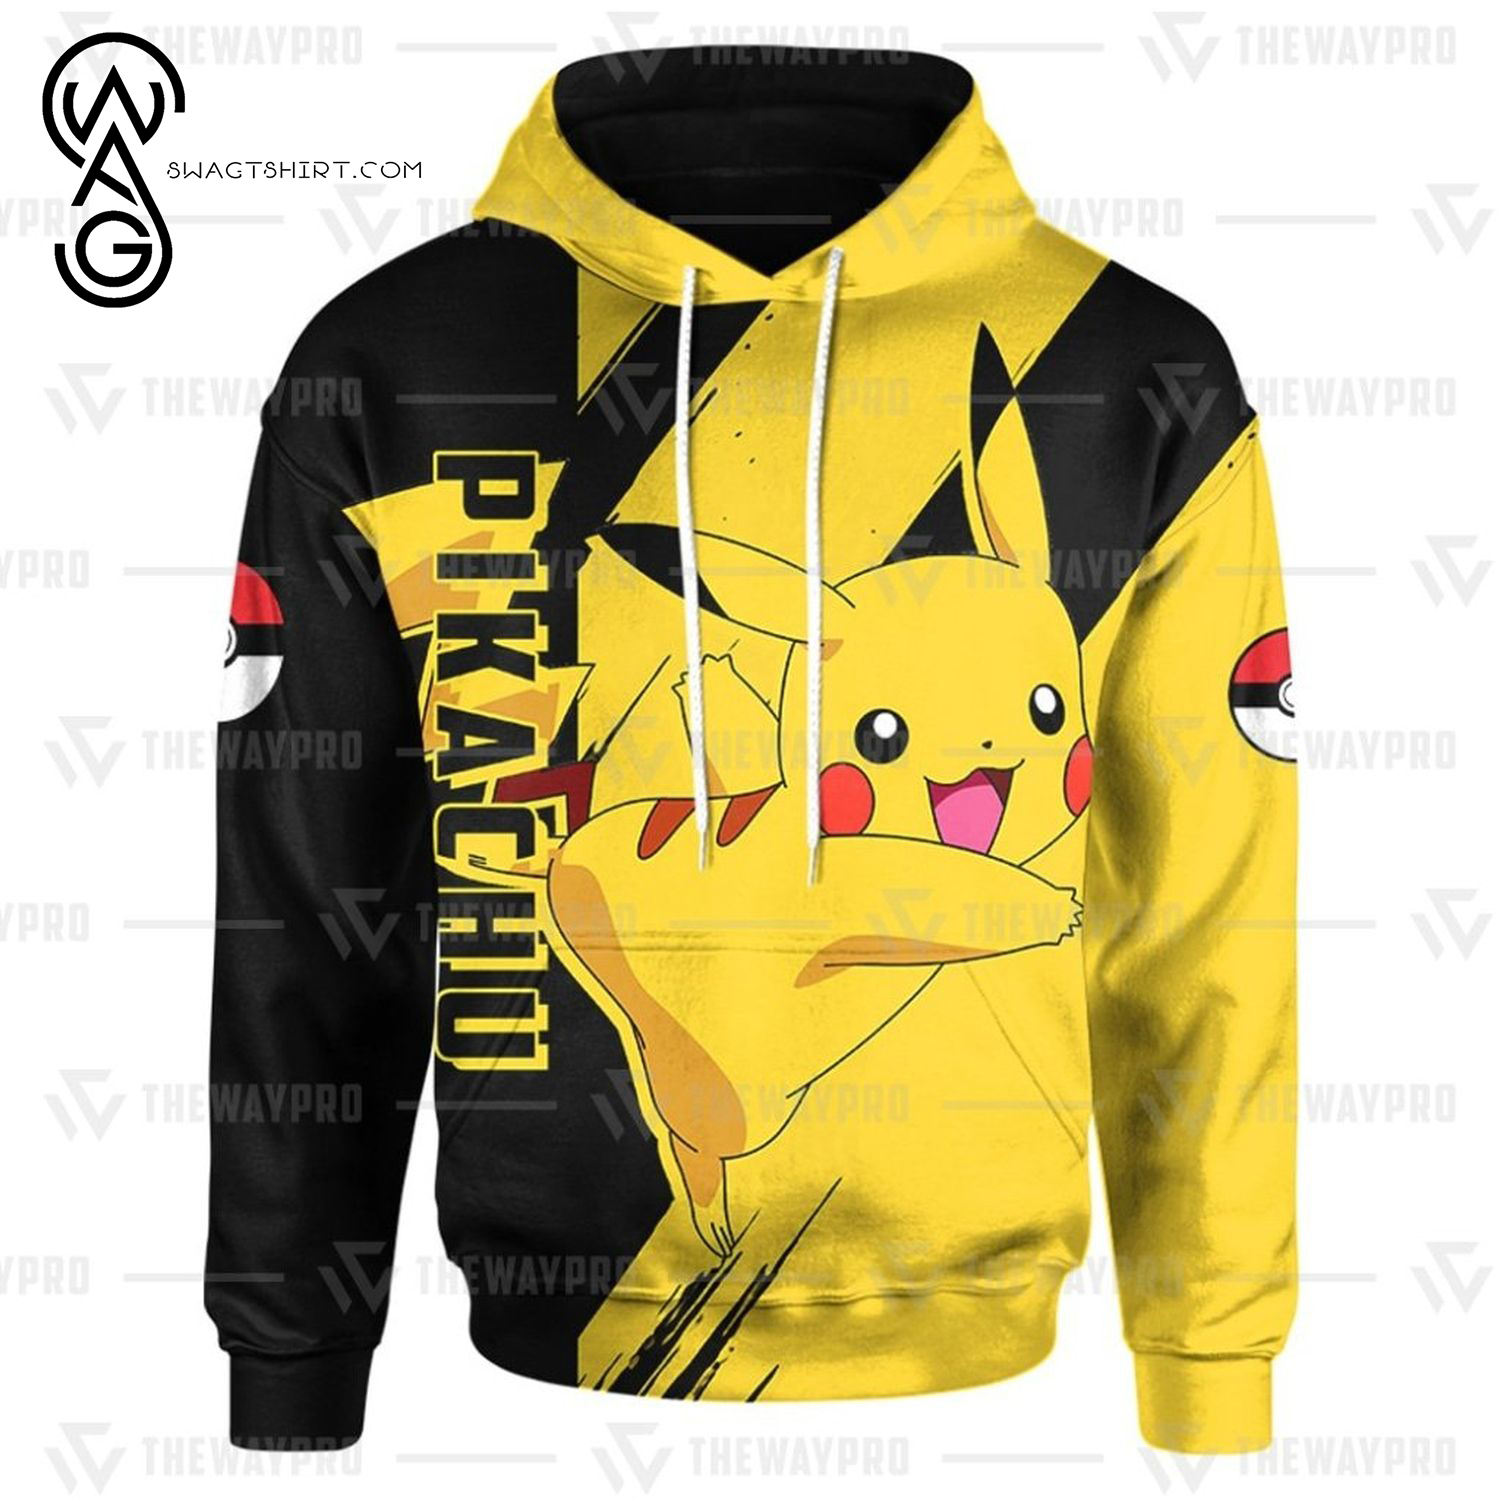 Anime Pokemon Pikachu All Over Print Shirt